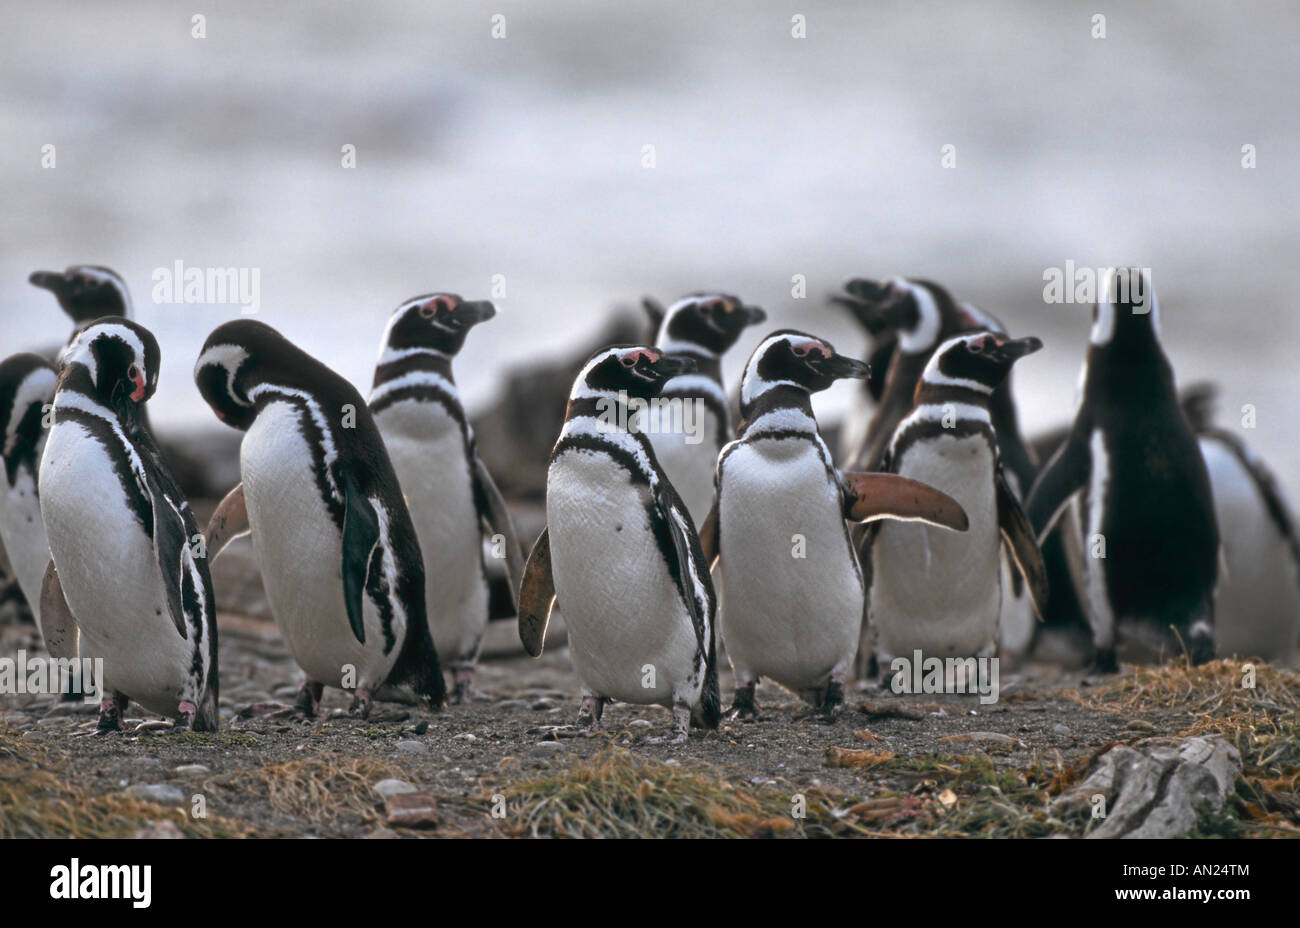 Pinguin Kolonie Magellanpinguine Seno Otway Patagonia Chile Magellanic Penguin Colony Spheniscus magellanicus Stock Photo